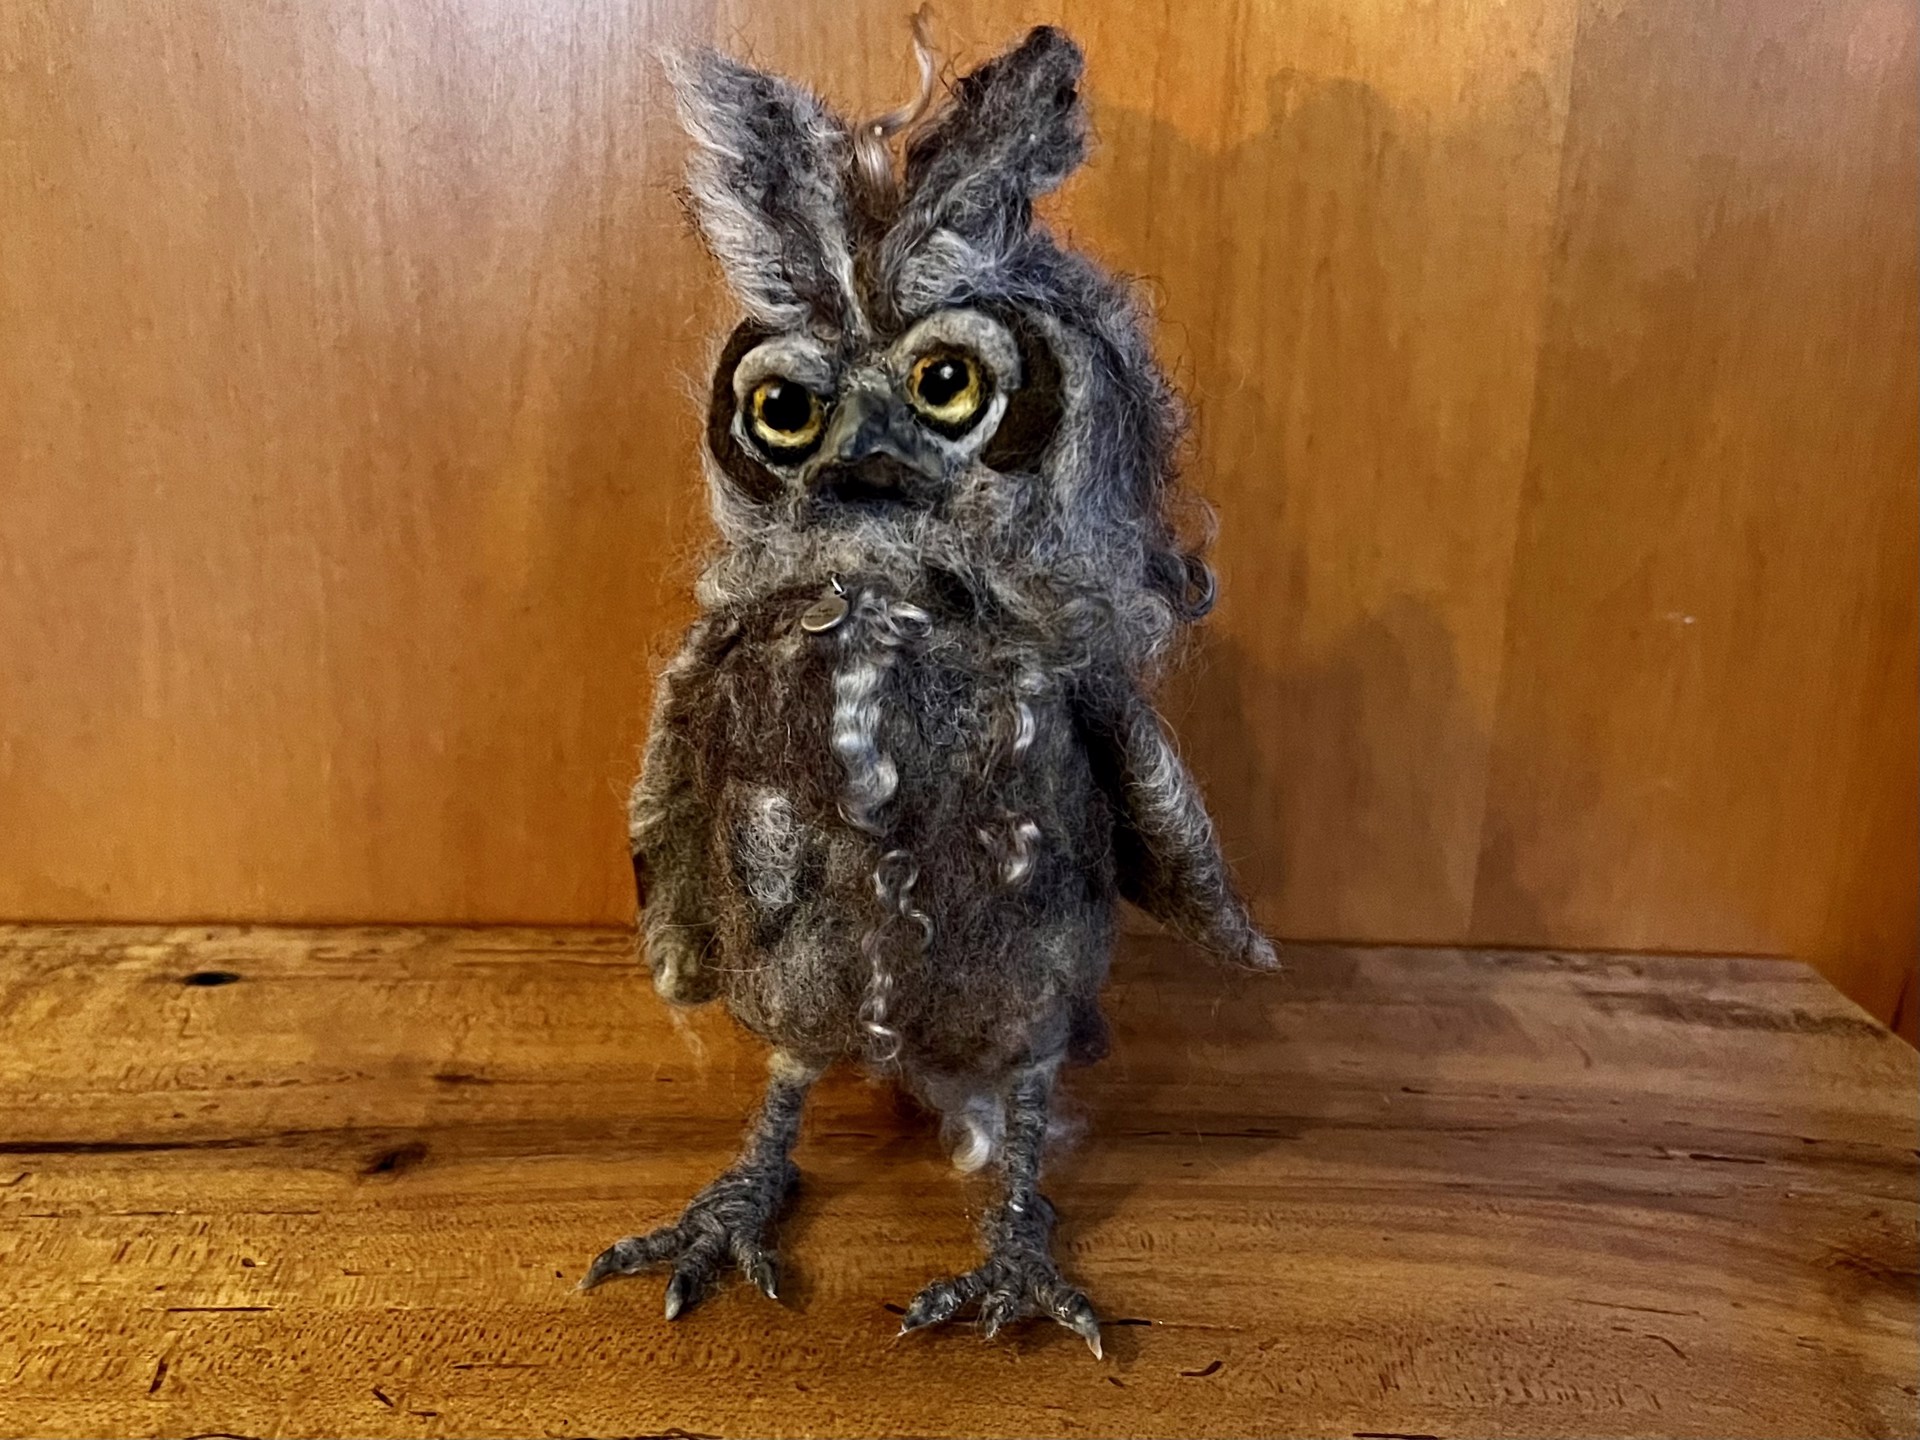 Owl by Barb Ottum